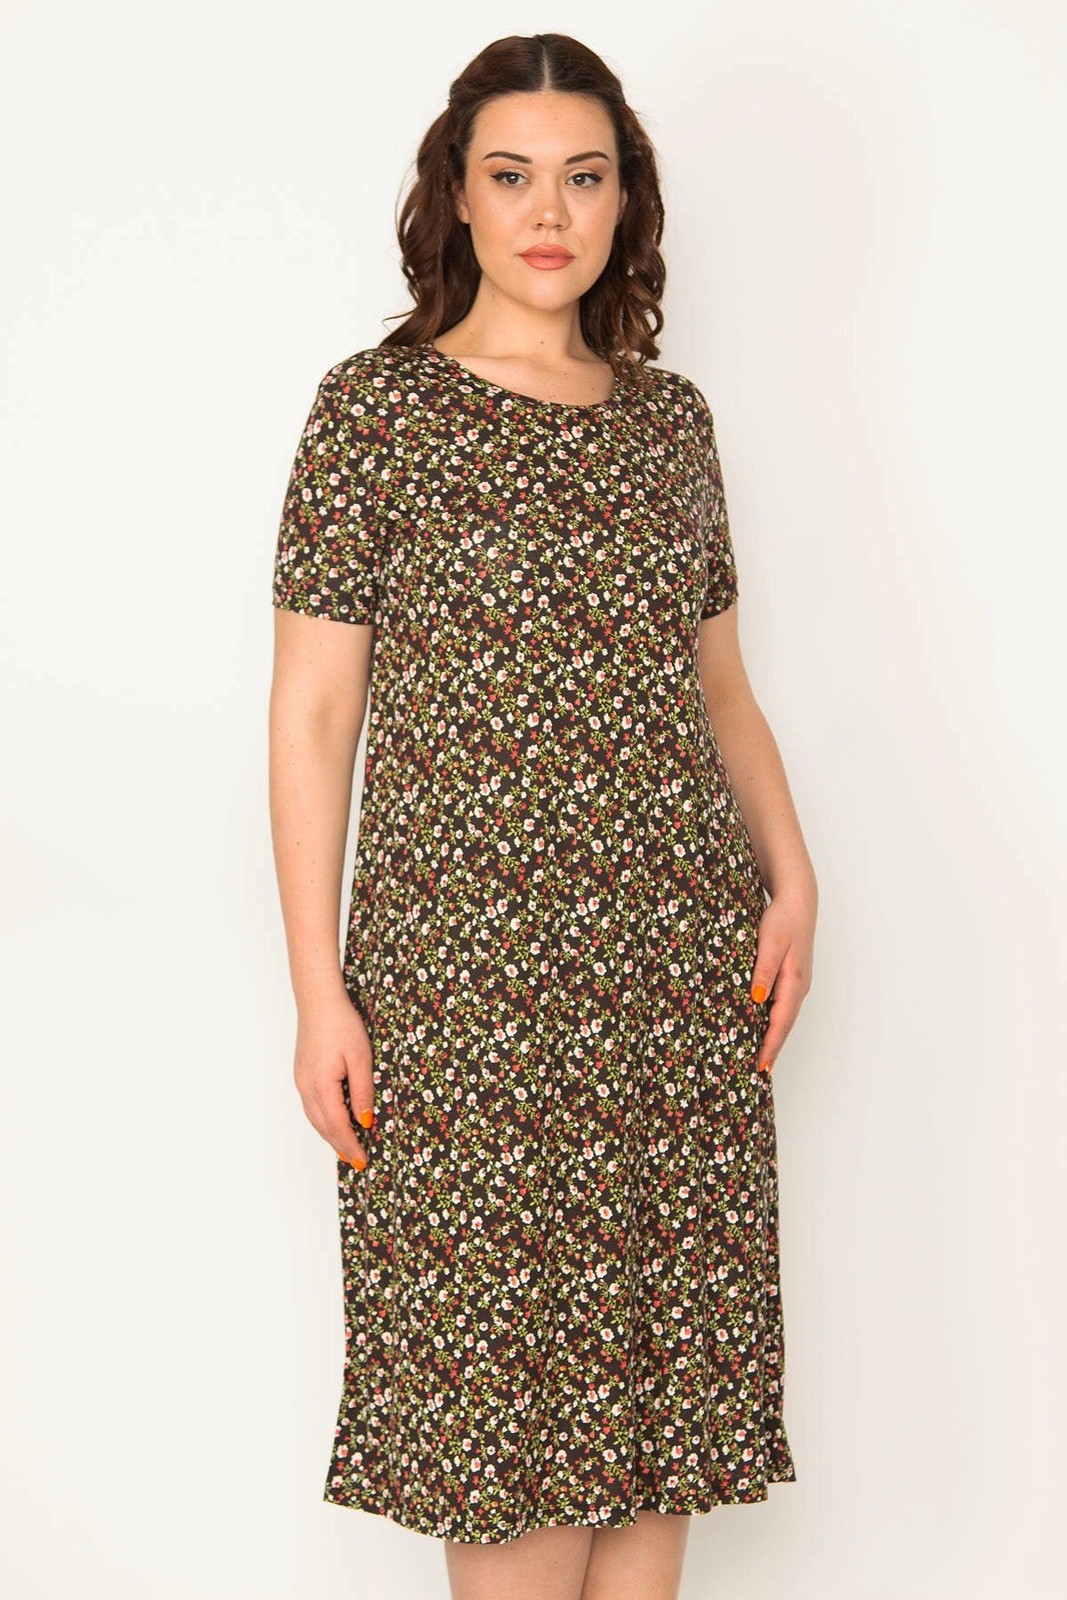 Şans Women's Plus Size Colorful Floral Pattern Short Sleeve Viscose Dress